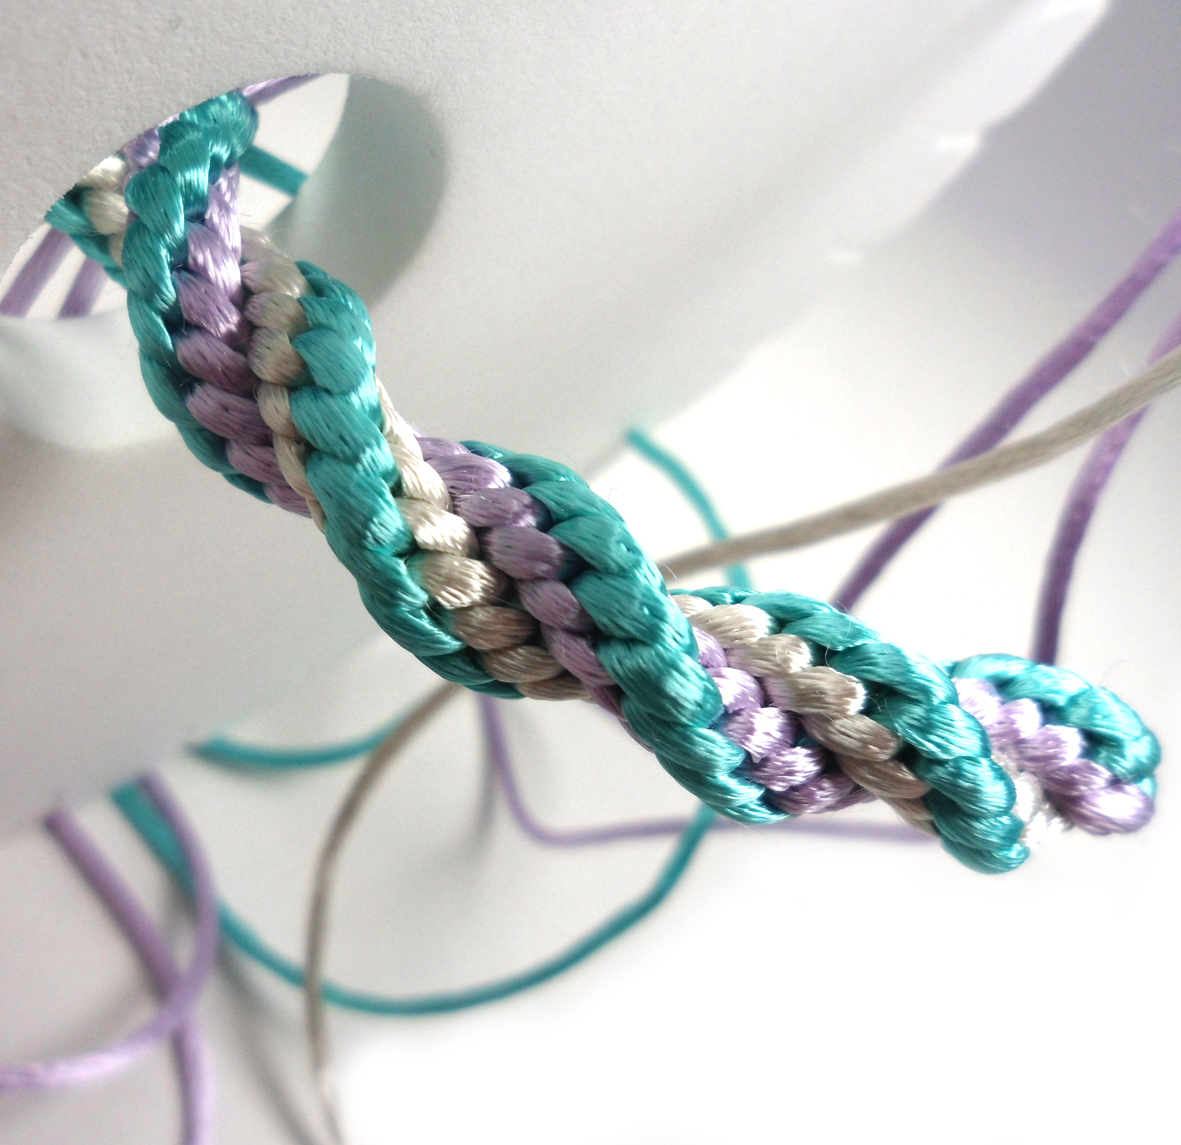 LIFE OF LINUZ: Tutorial: Make your own spiral bracelet!